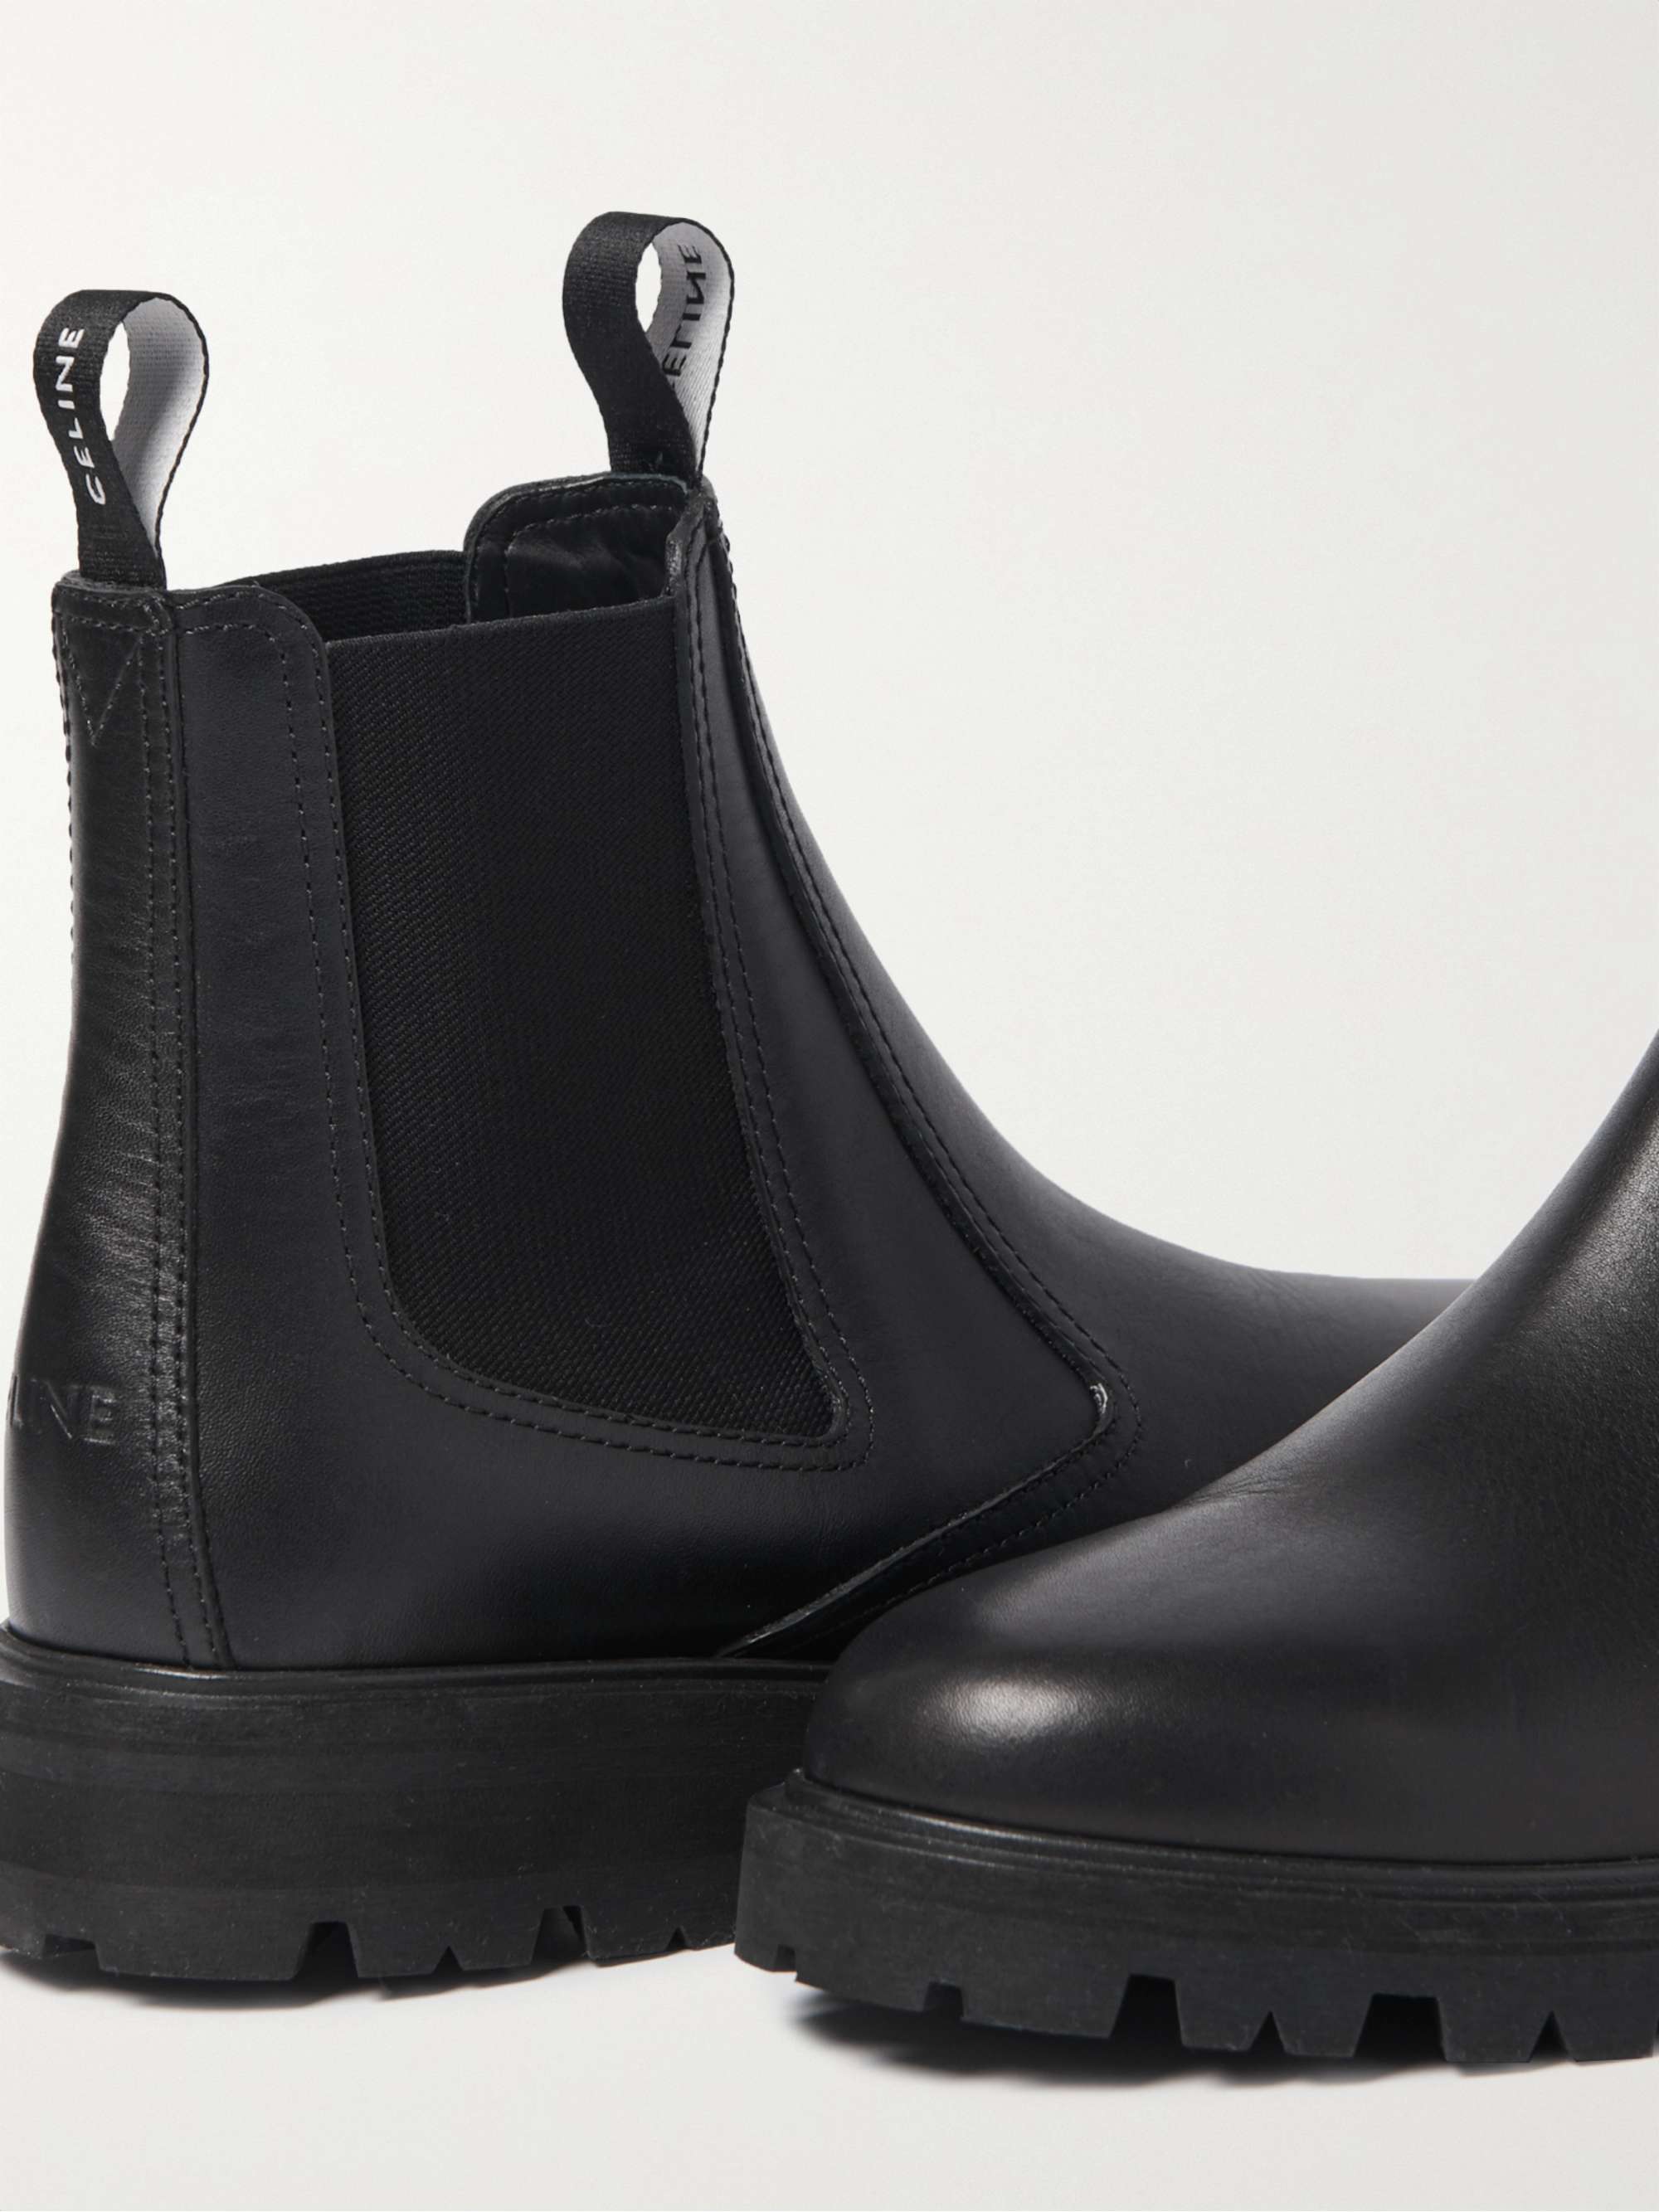 Black Margaret Leather Chelsea Boots | CELINE HOMME | MR PORTER